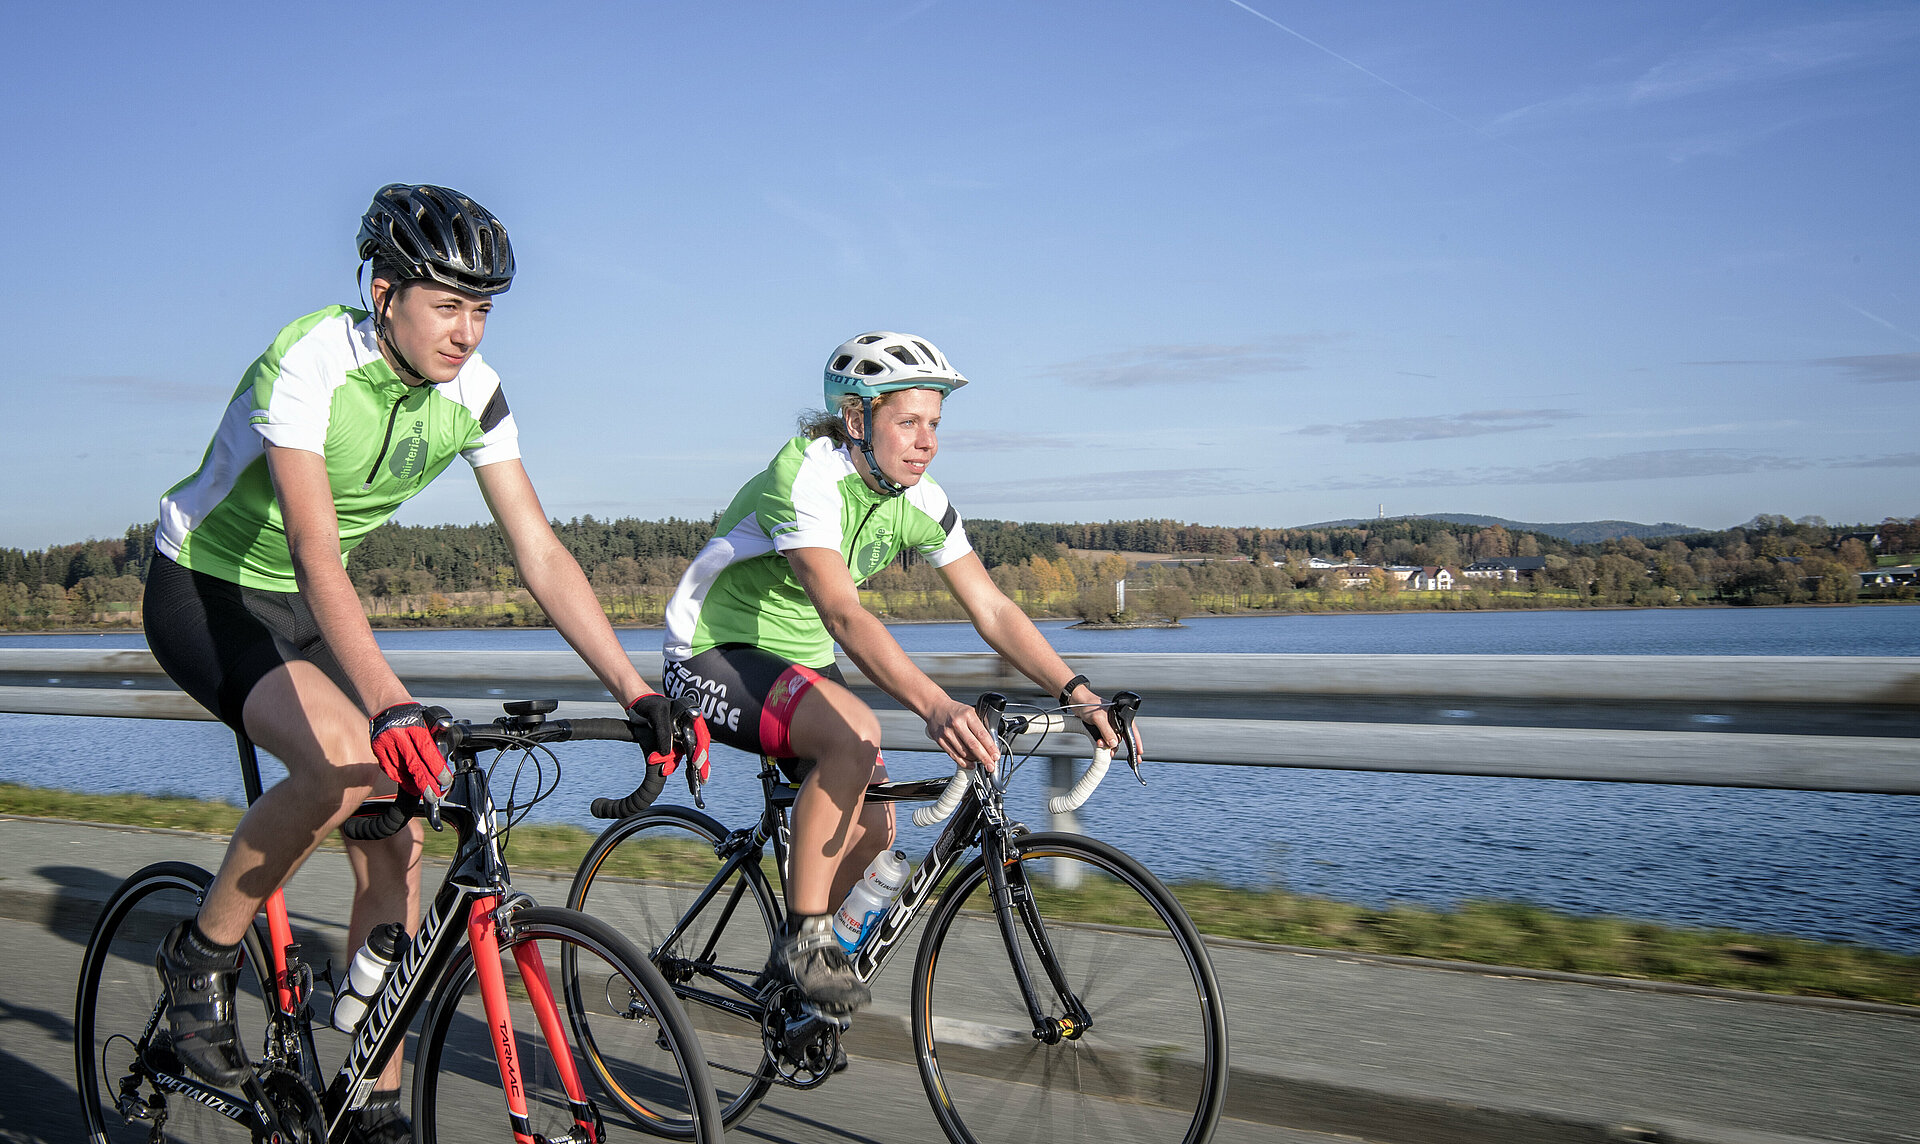 Zwei Rennradfahrer in voller Fahrt vor einem See und blauem Himmel